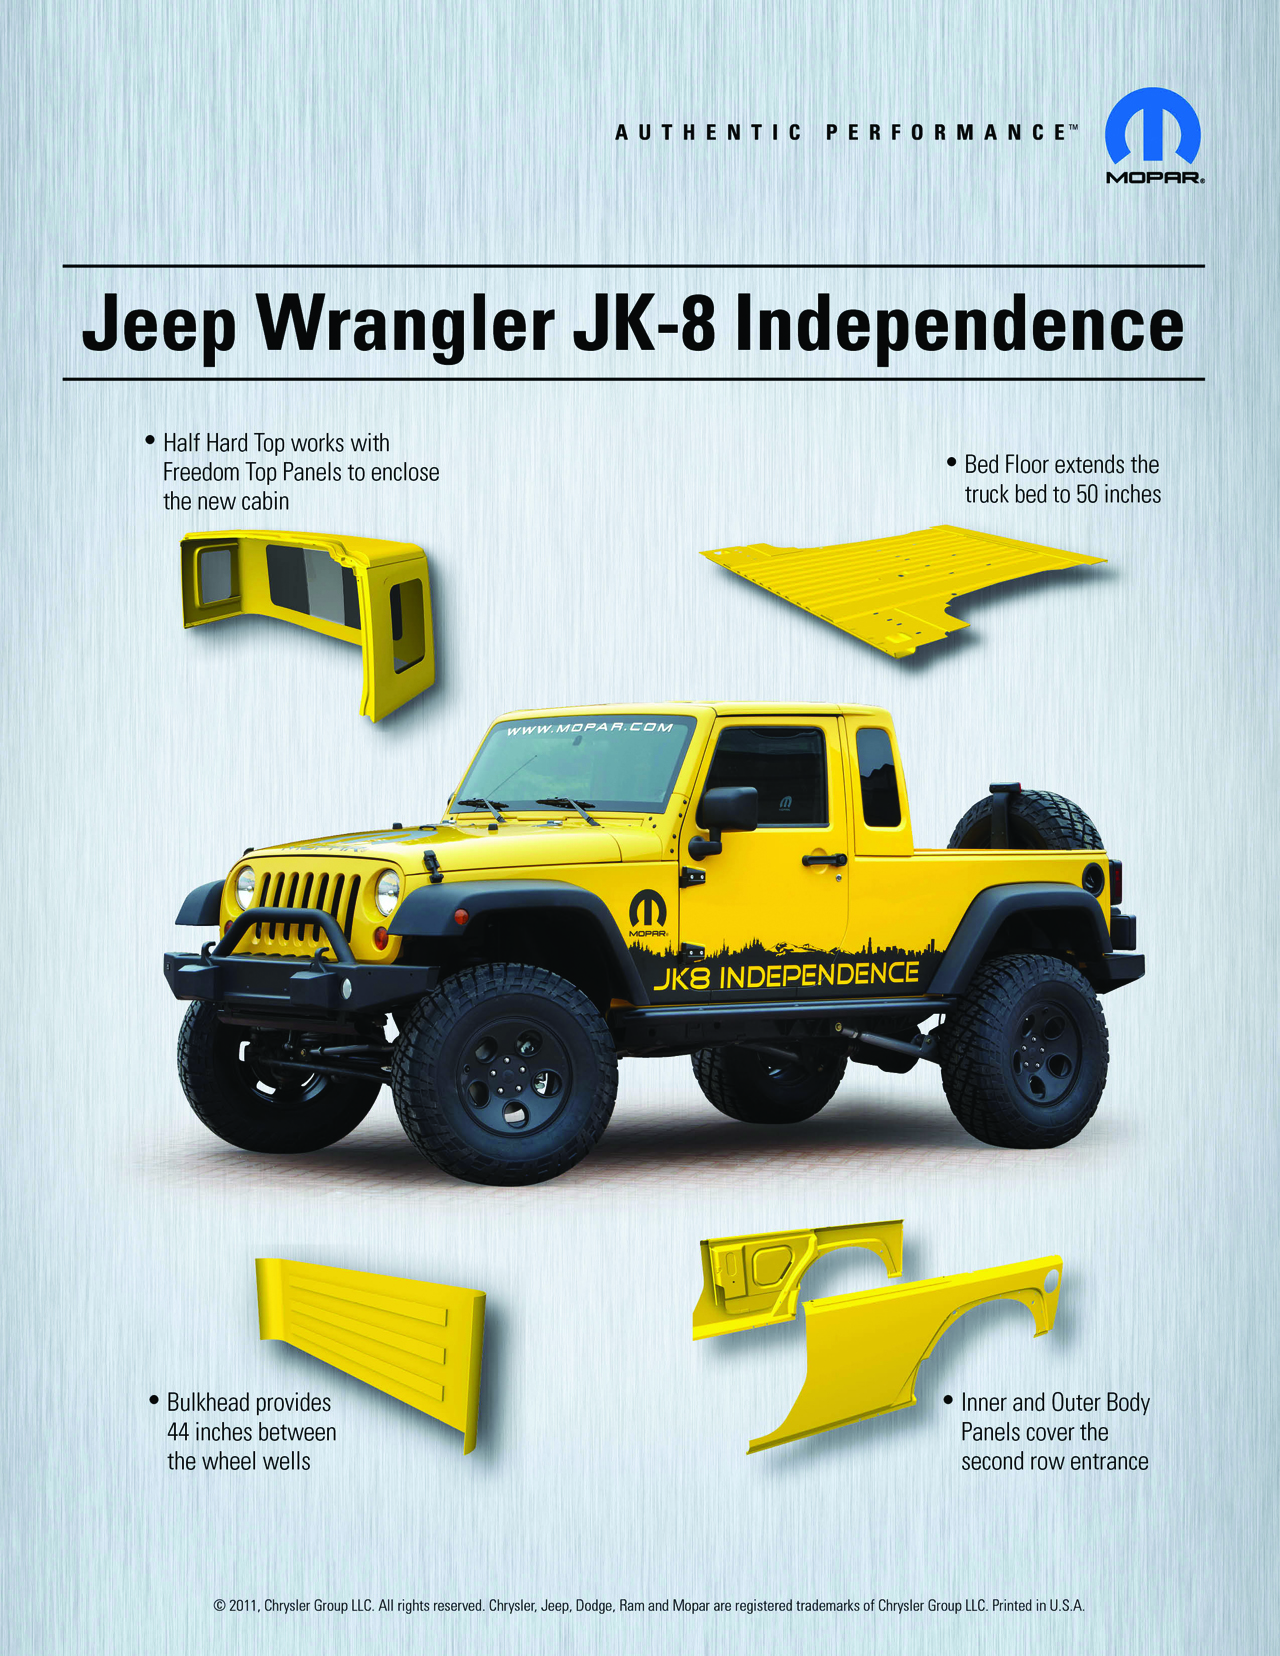 Jeep Wrangler JK-8 Independence